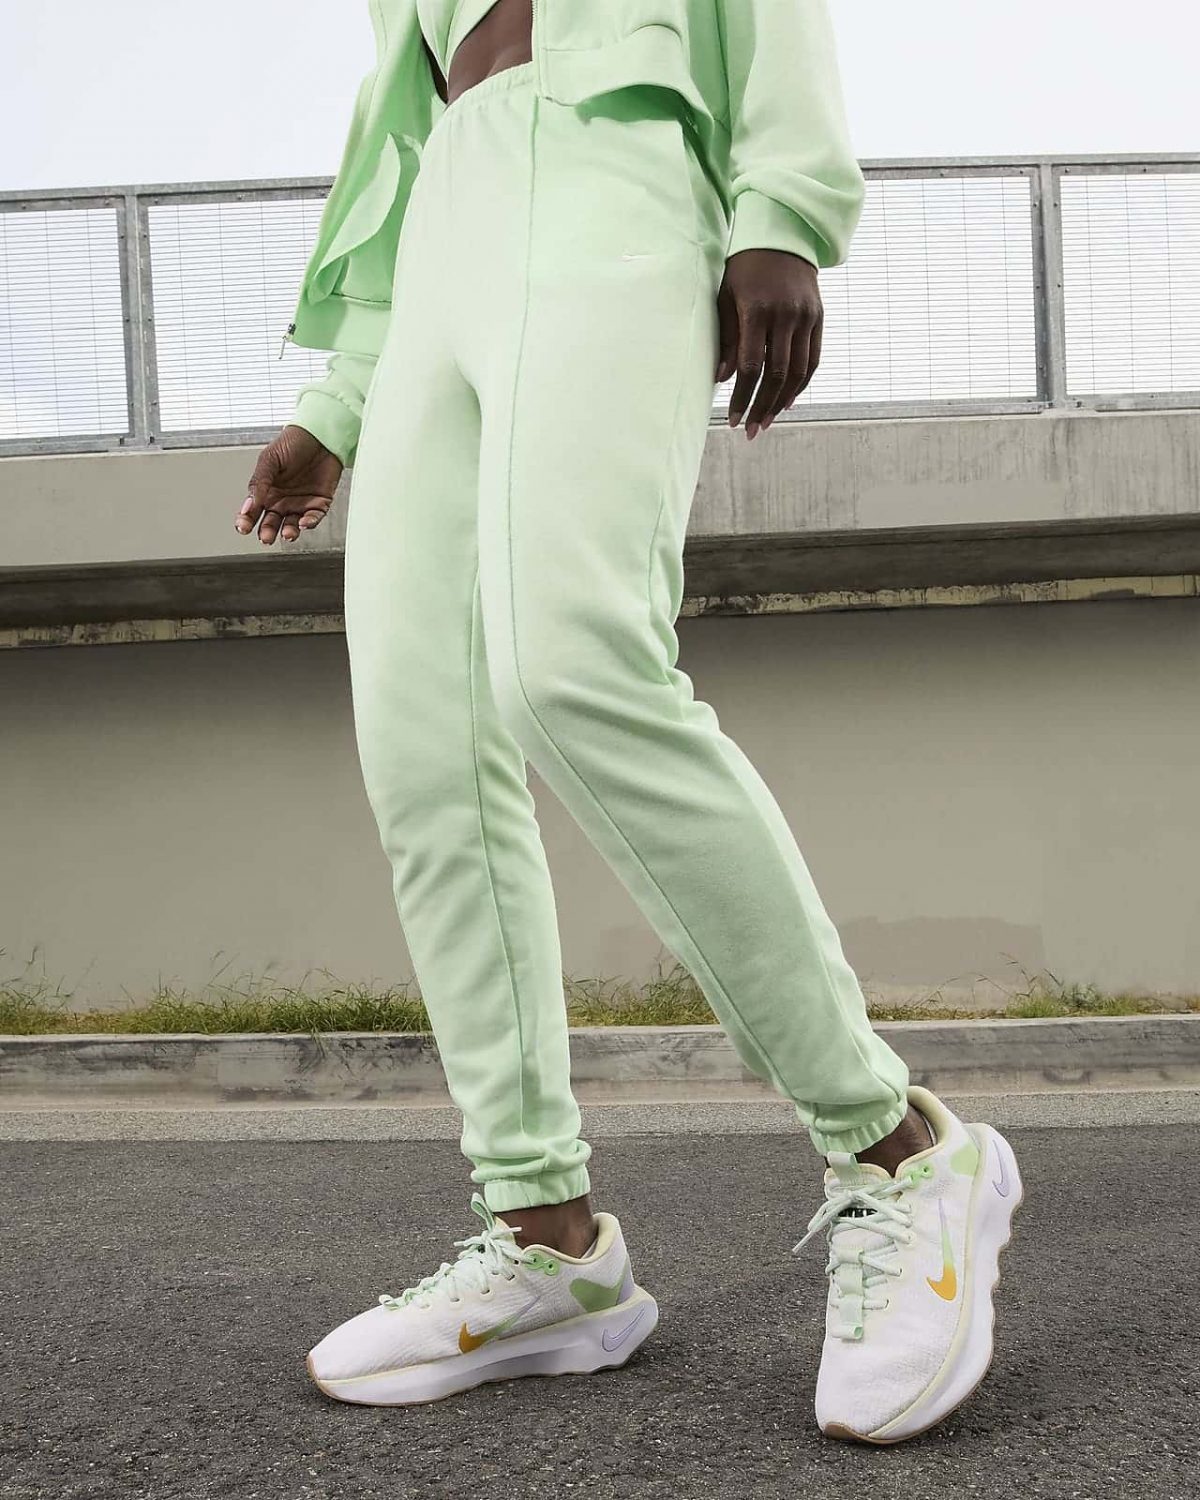 Женские кроссовки Nike Motiva белые фотография